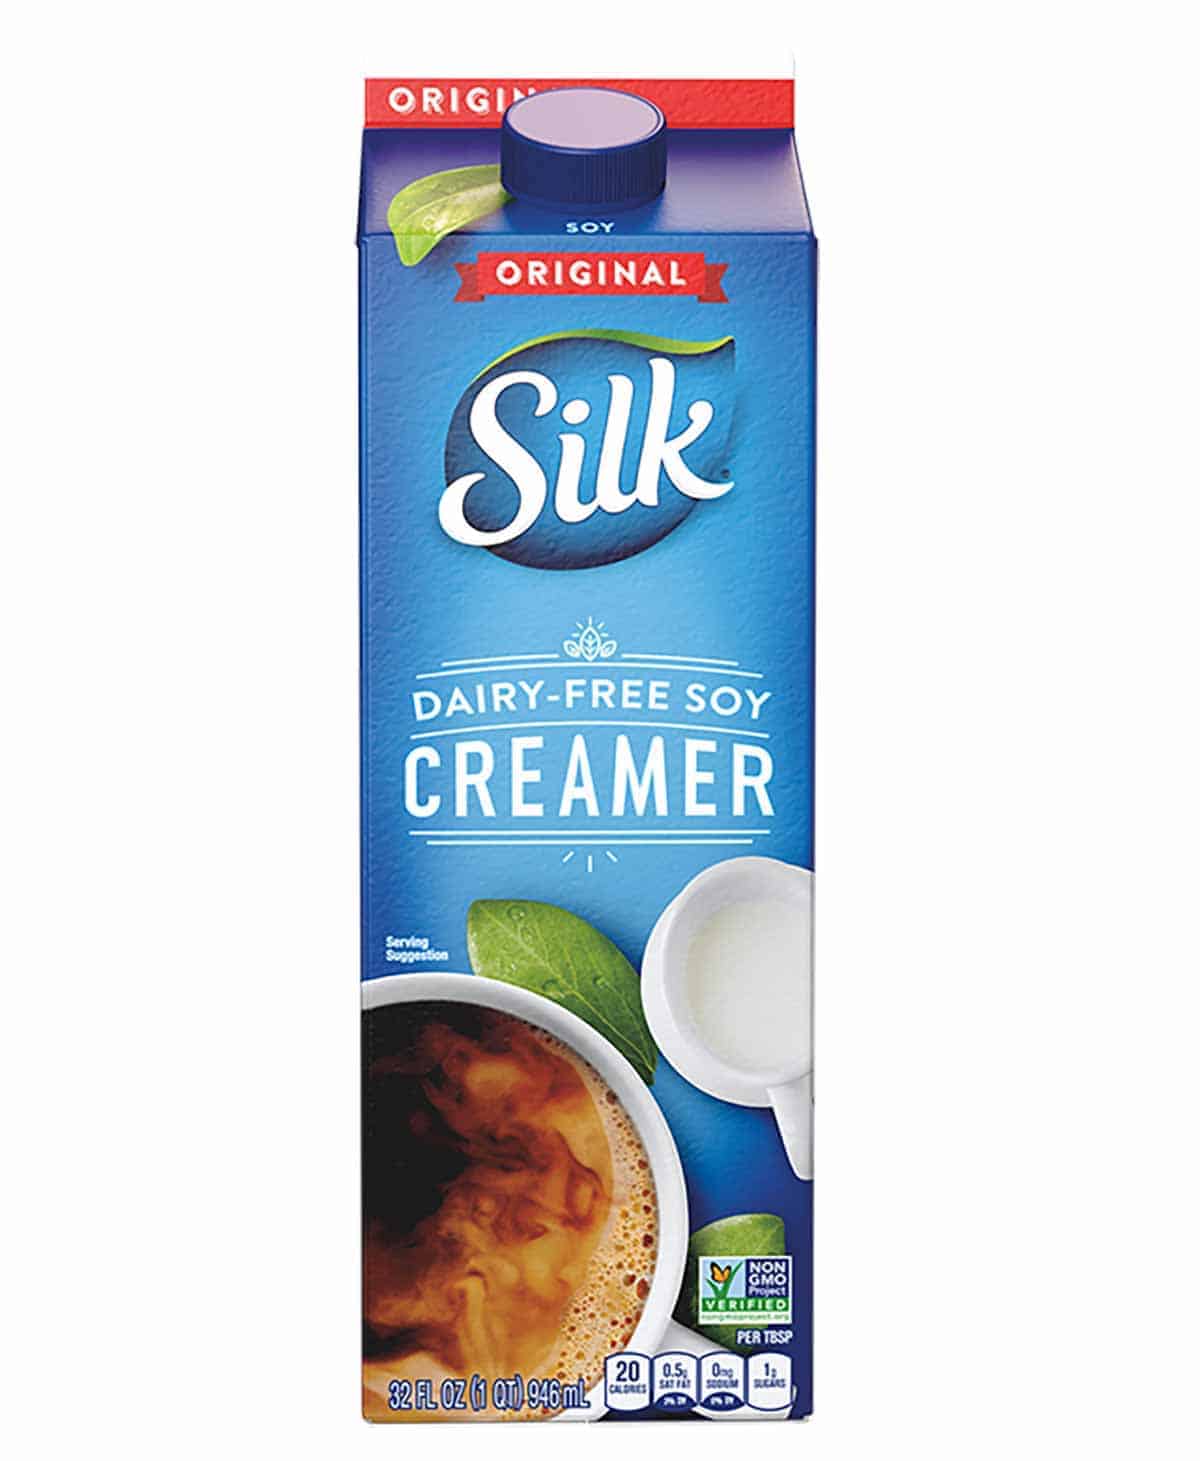 A carton of Silk Original Soy Creamer